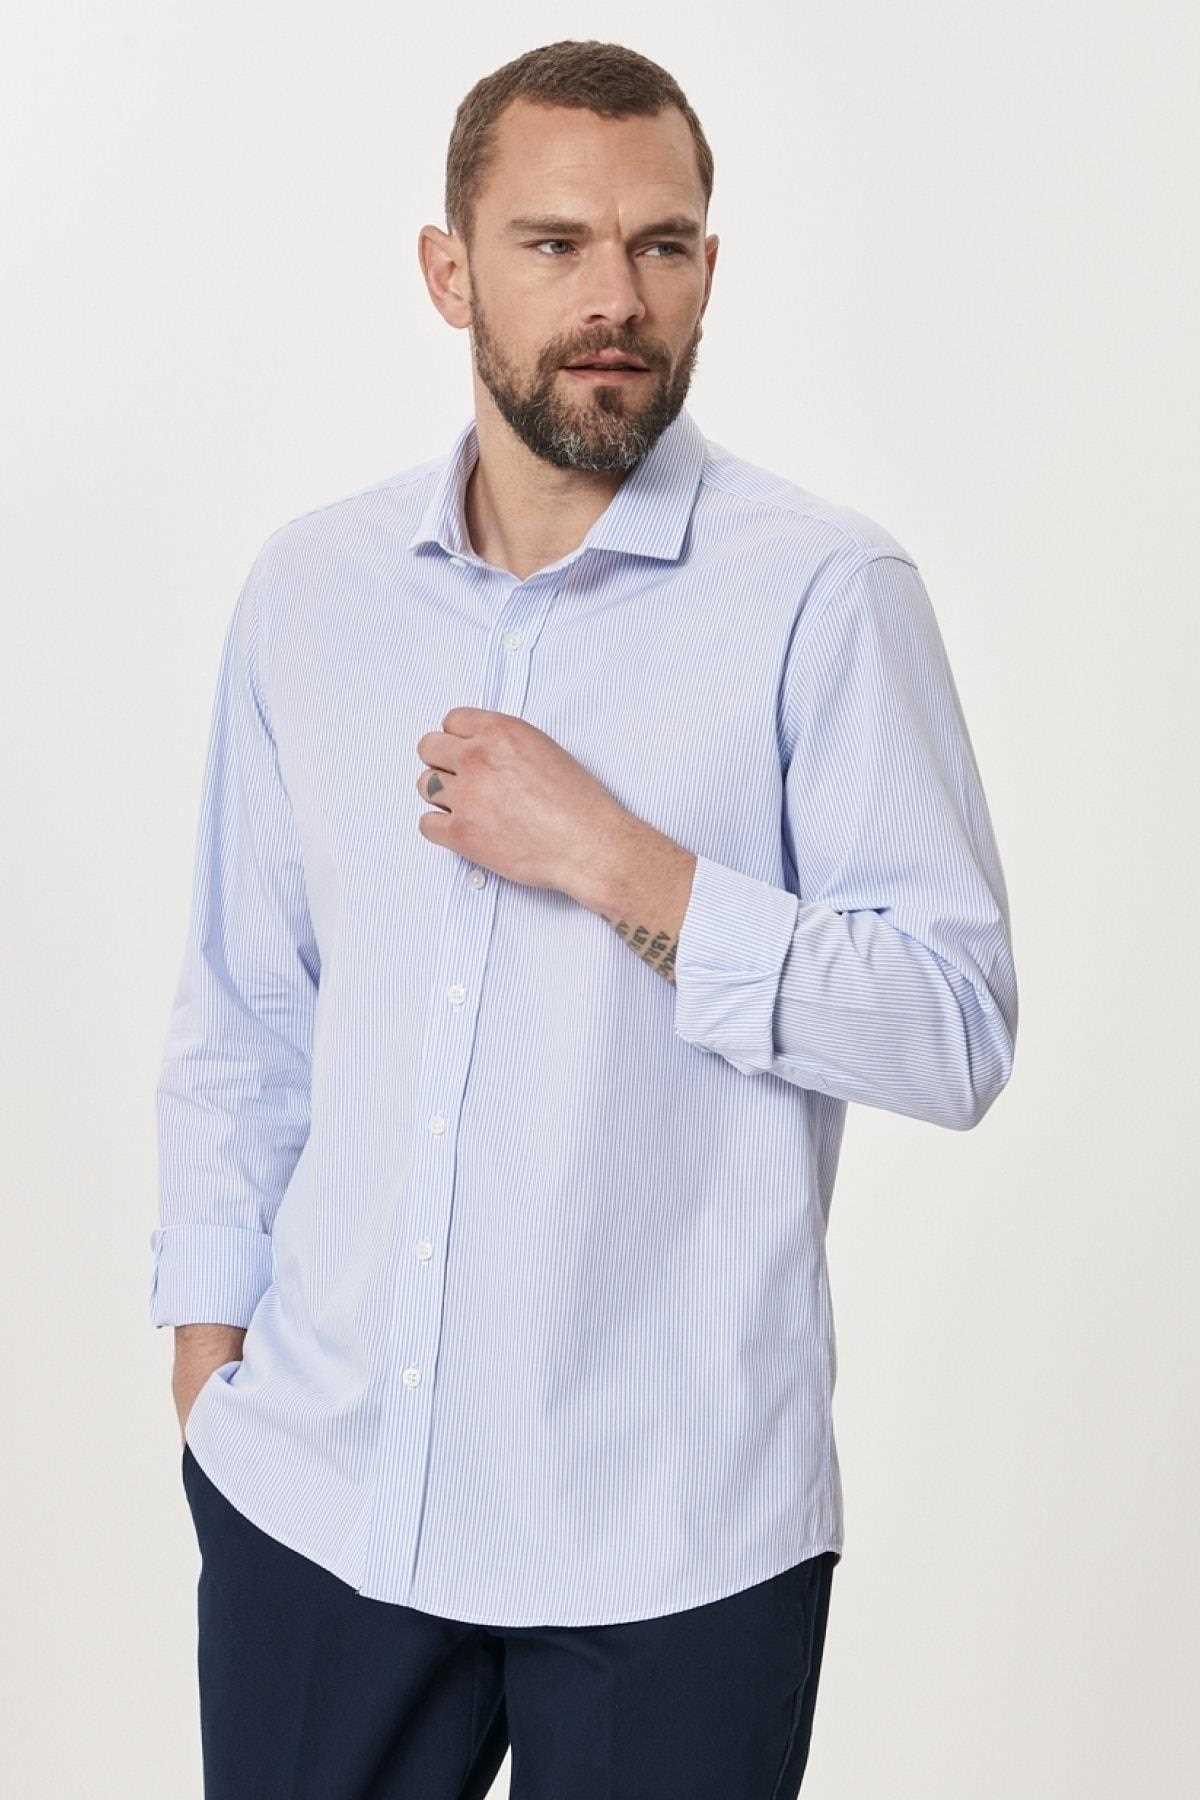 خرید پیراهن مردانه ترک جدید برند آلتین ییلدیز رنگ سفید ty90053889